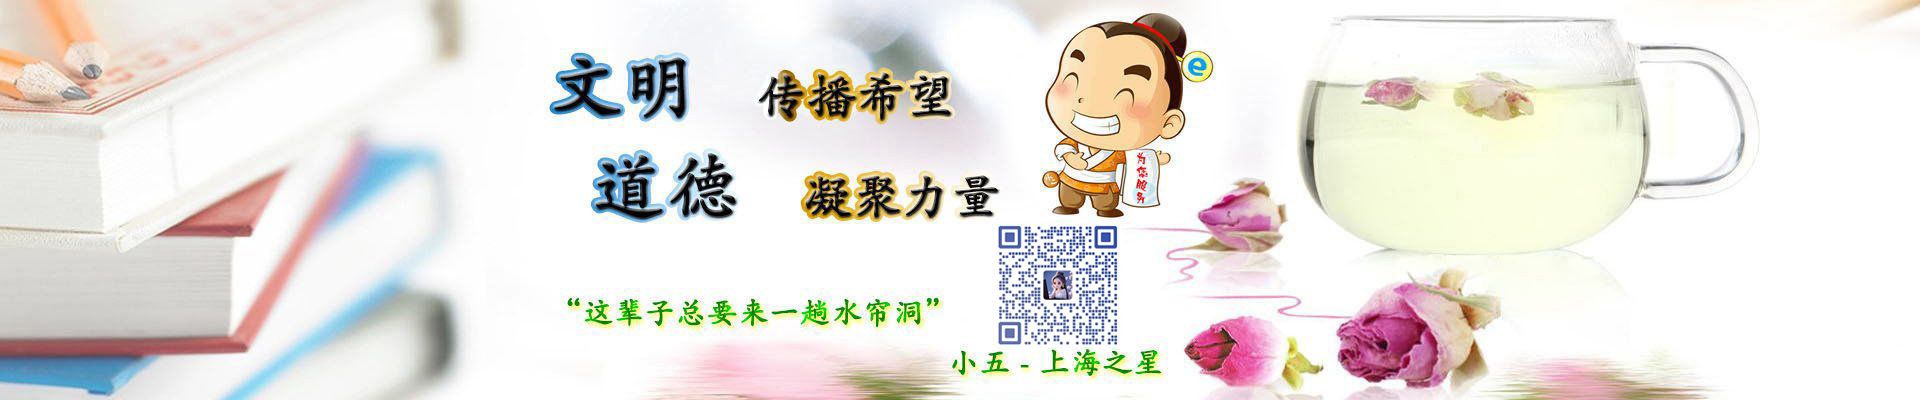 上海水帘洞品茶工作室banner3